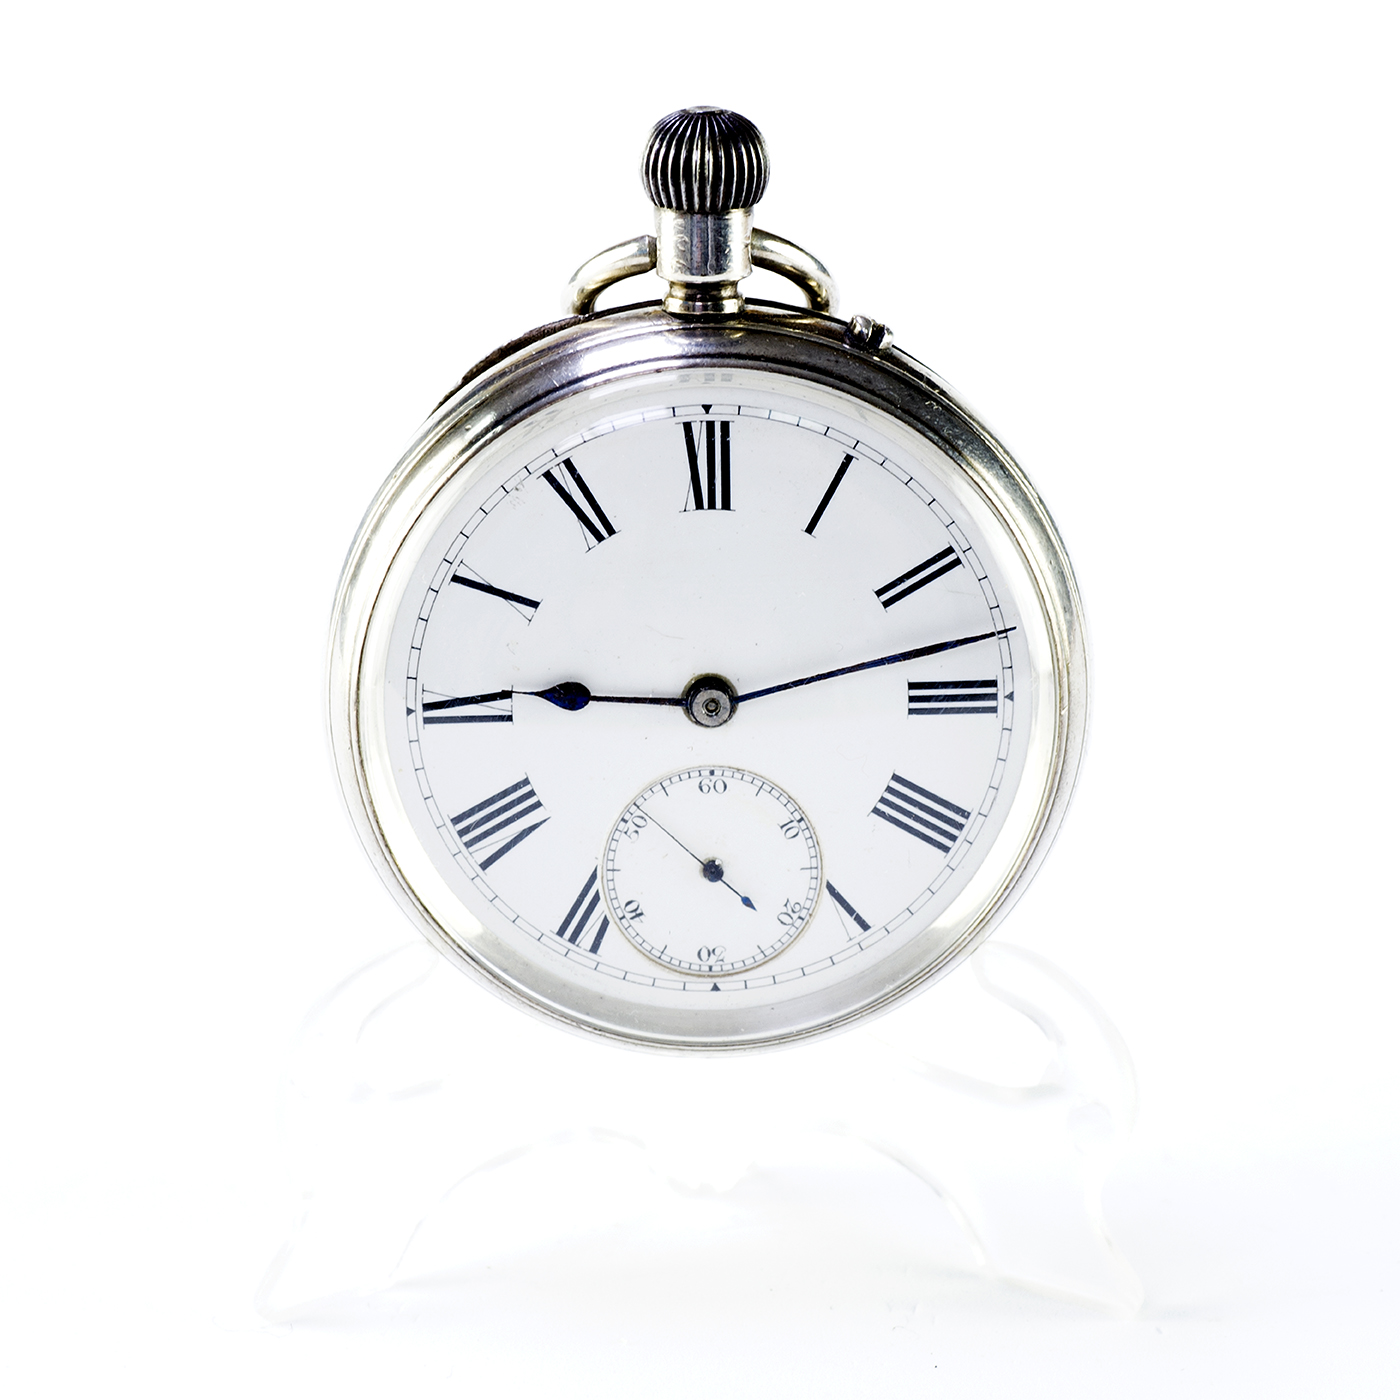 SIR JOHN BENNETT (Londres). Reloj de bolsillo, lepine y remontoir. Chester, 1887.